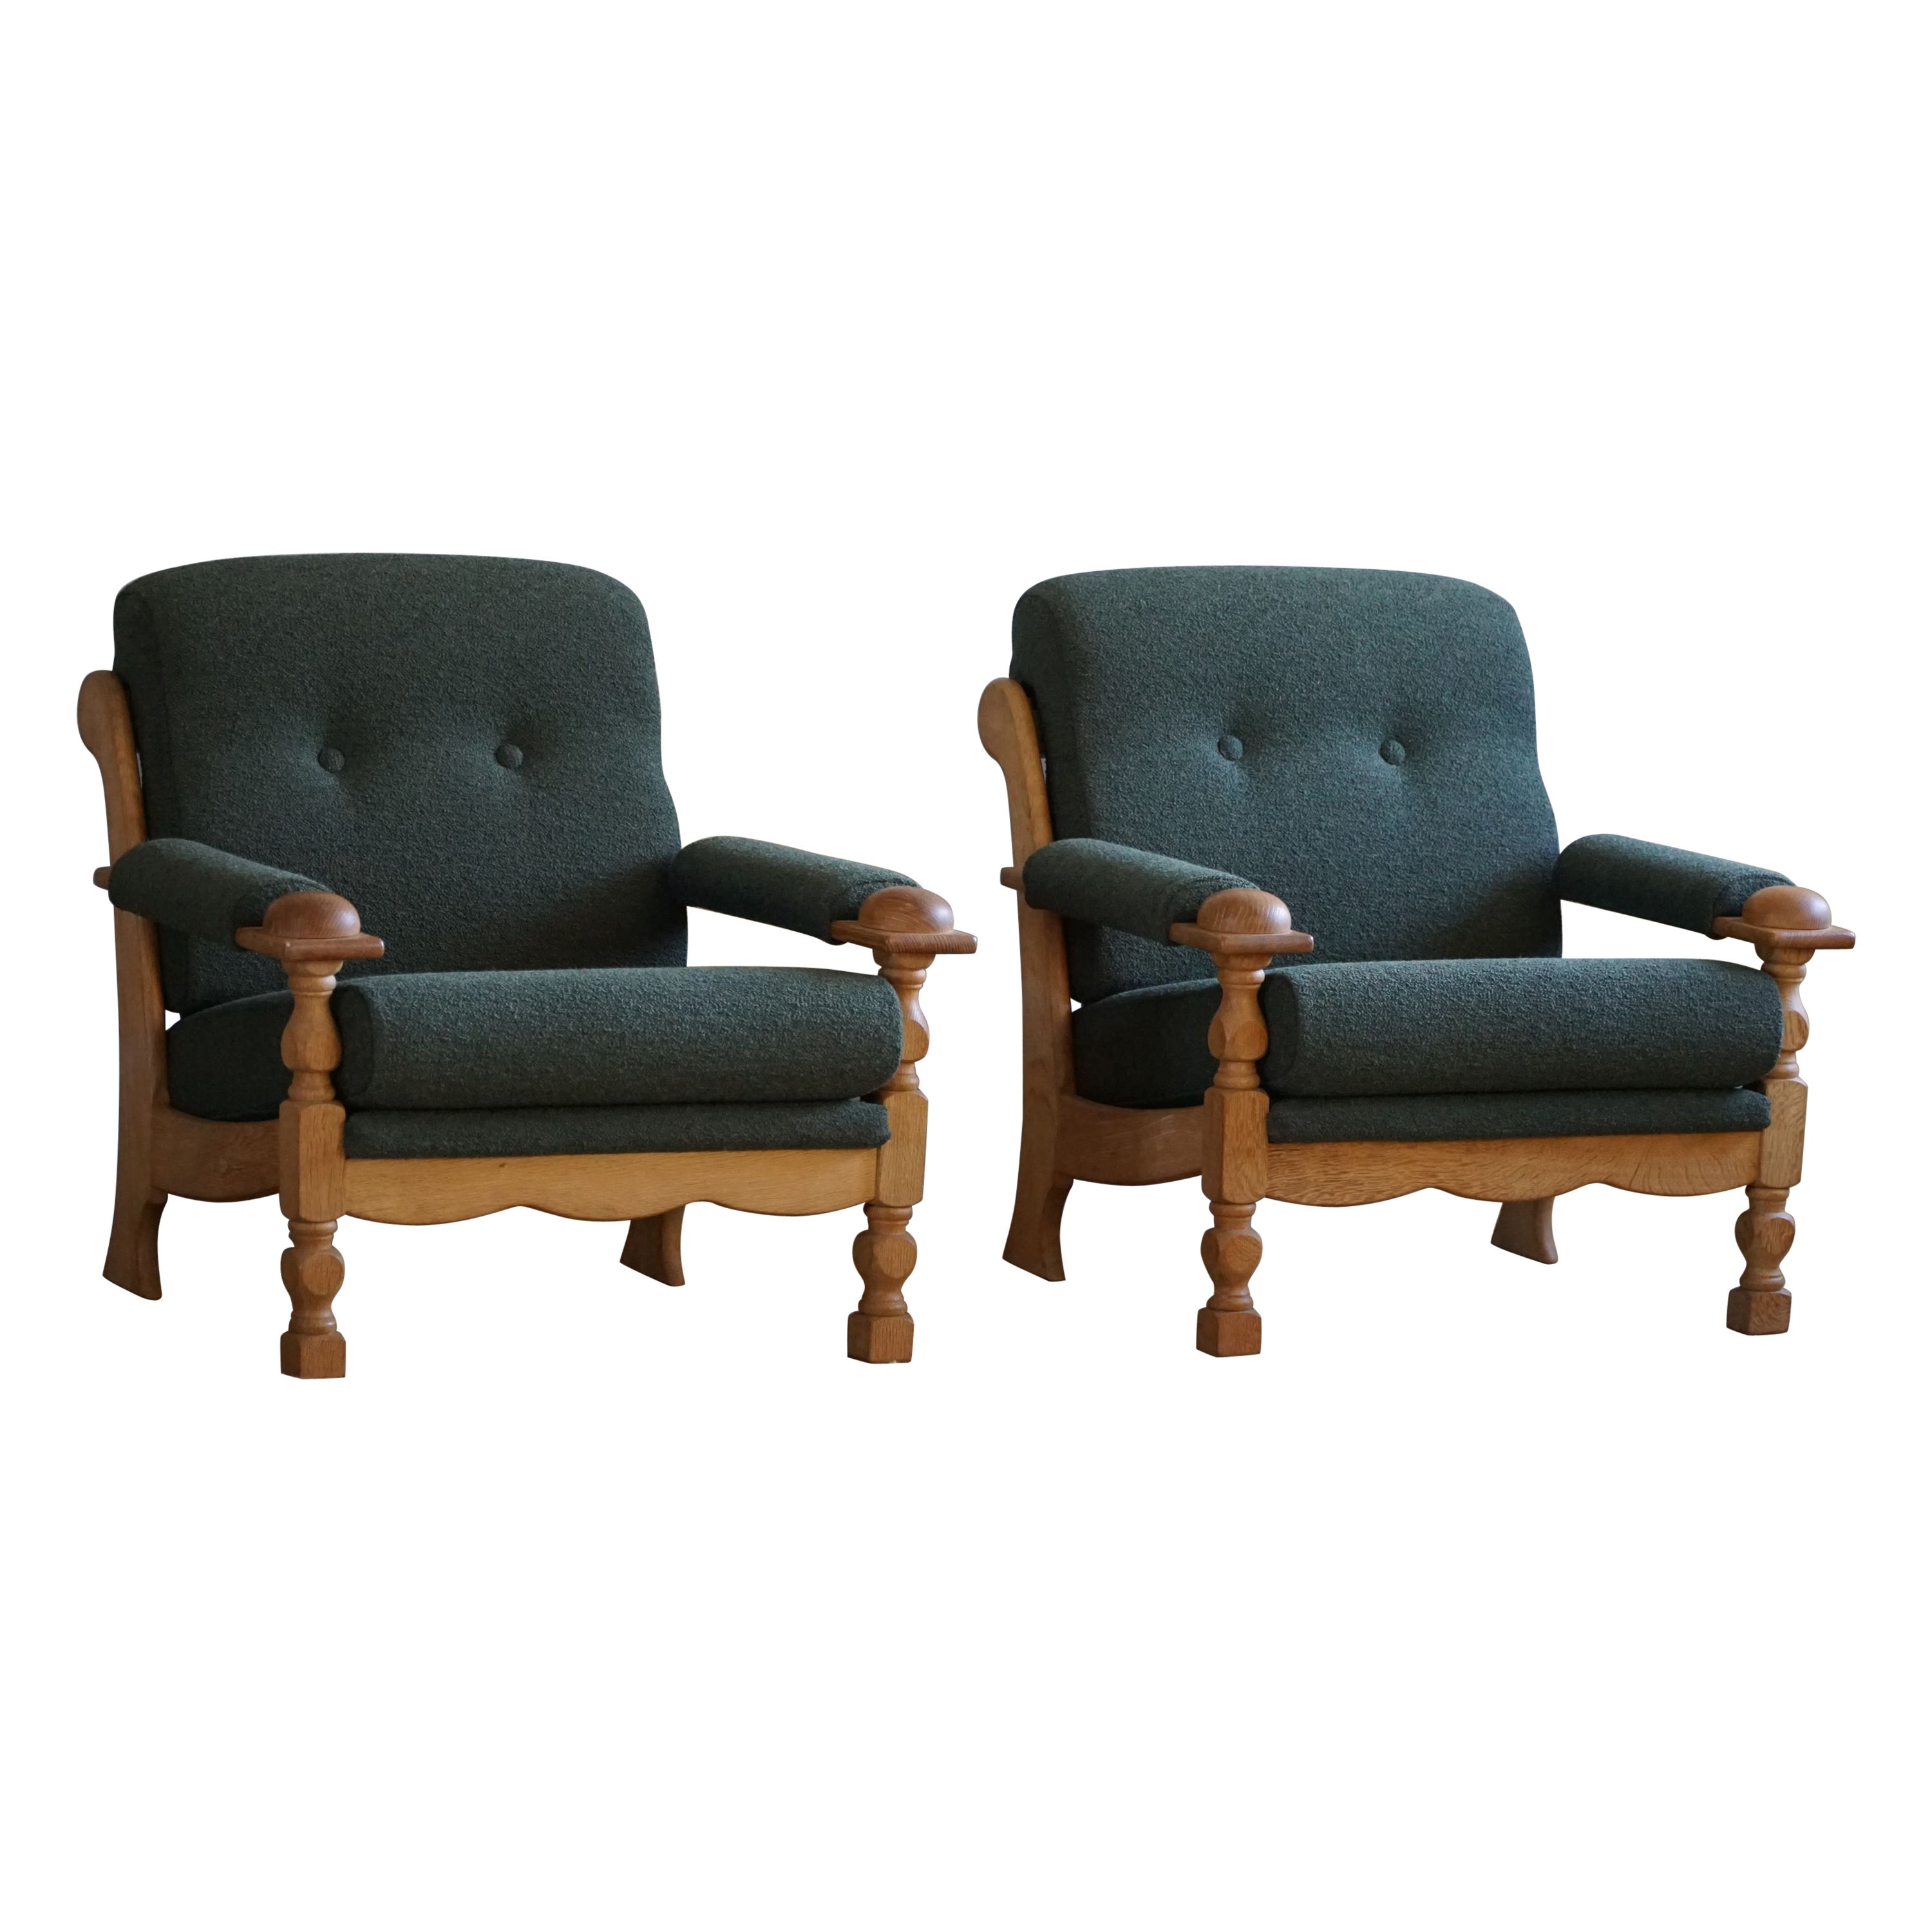 Henning Kjærnulf, Lounge Chairs in Oak & Bouclé, Danish Mid Century, 1960s For Sale